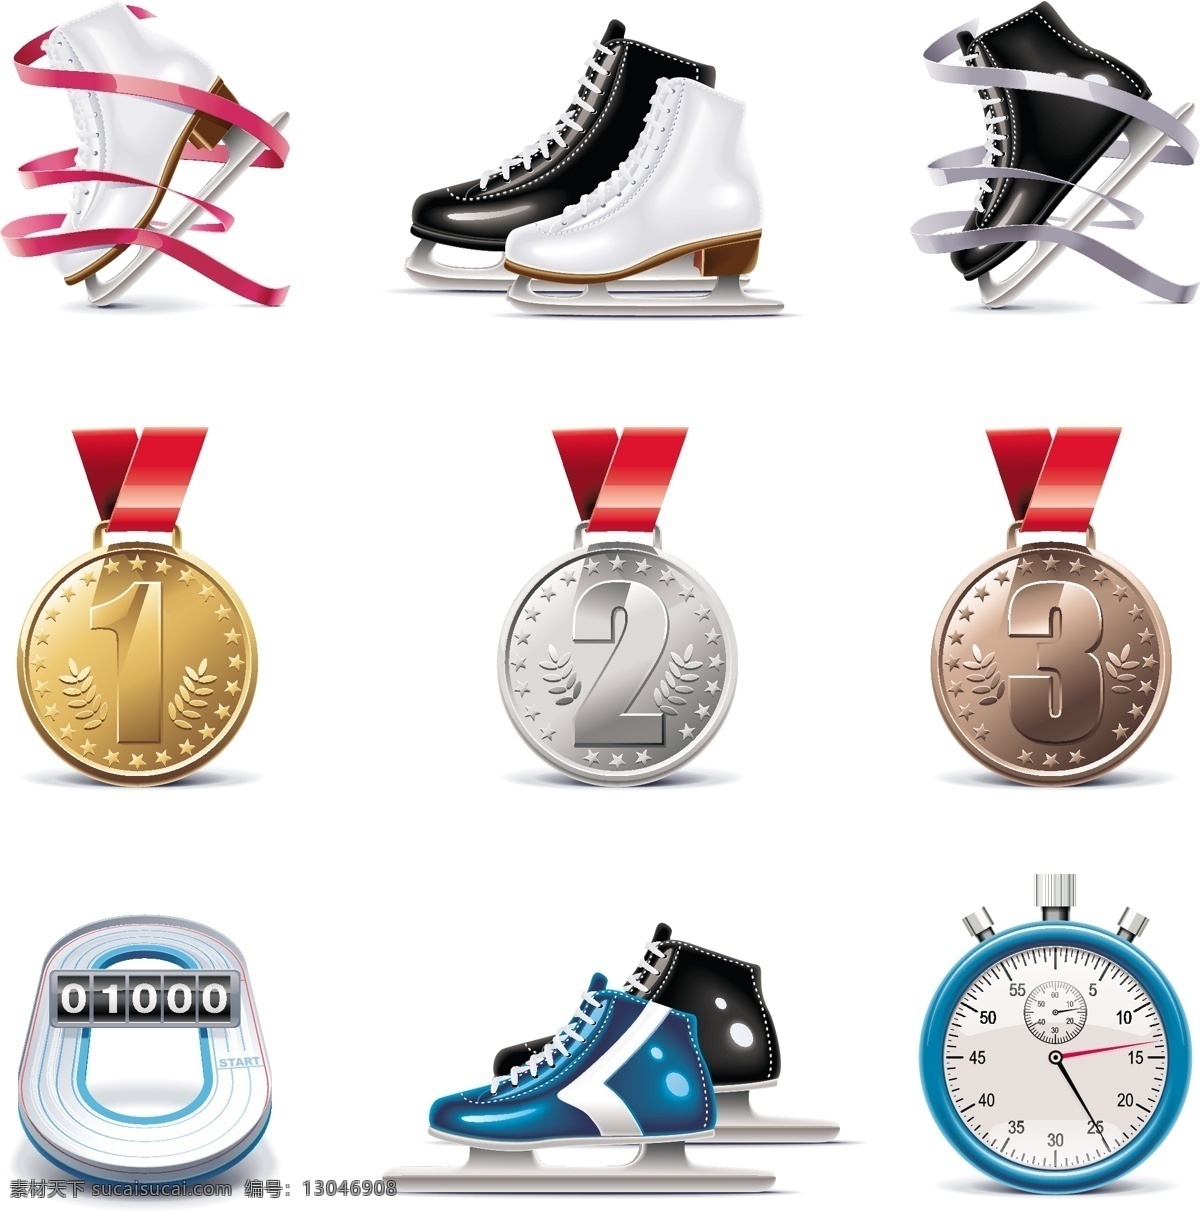 速度 滑冰 运动 图标 矢量 奖牌 金牌 溜冰鞋 秒表 铜牌 银牌 滑冰鞋 矢量图 其他矢量图